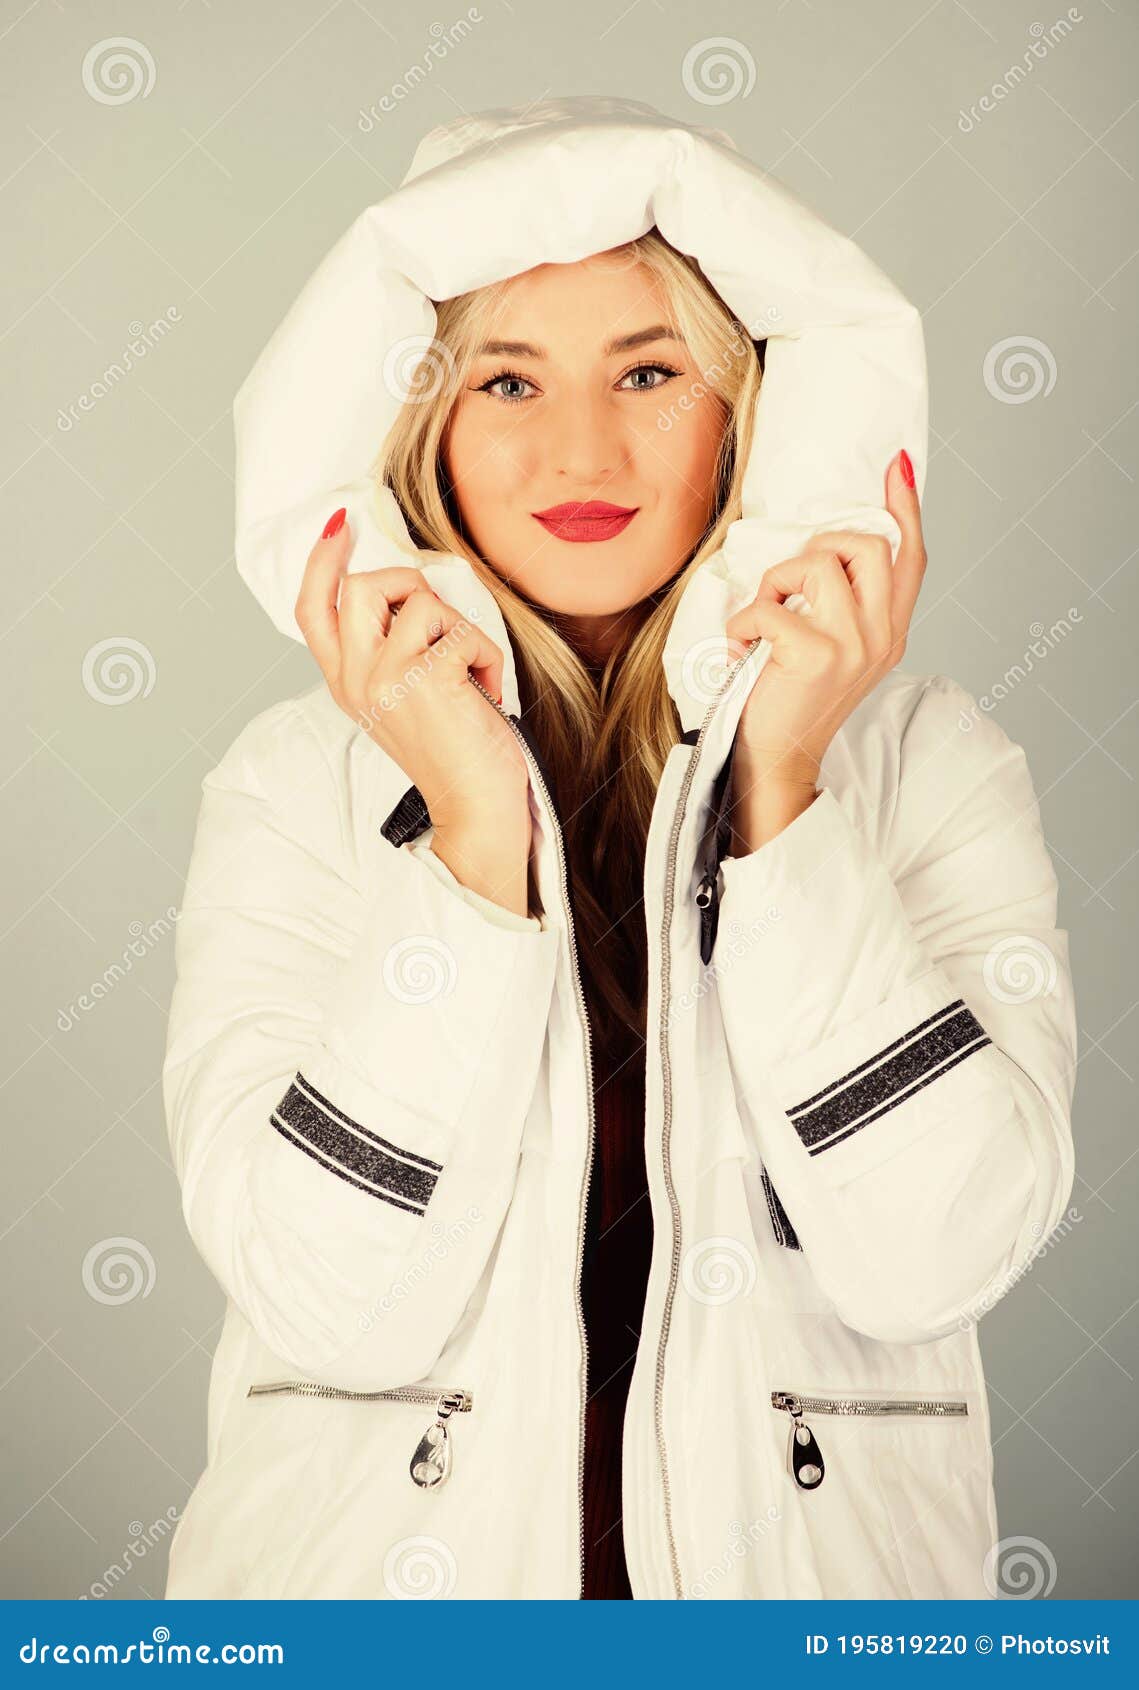 Ropa De Invierno De Lujo. No Todas Las Son Ideales Para Cada Clima. Chica Lleva Una Camisa Blanca. La Chaqueta Tiene Un Foto de archivo - Imagen fashionable, equipo: 195819220